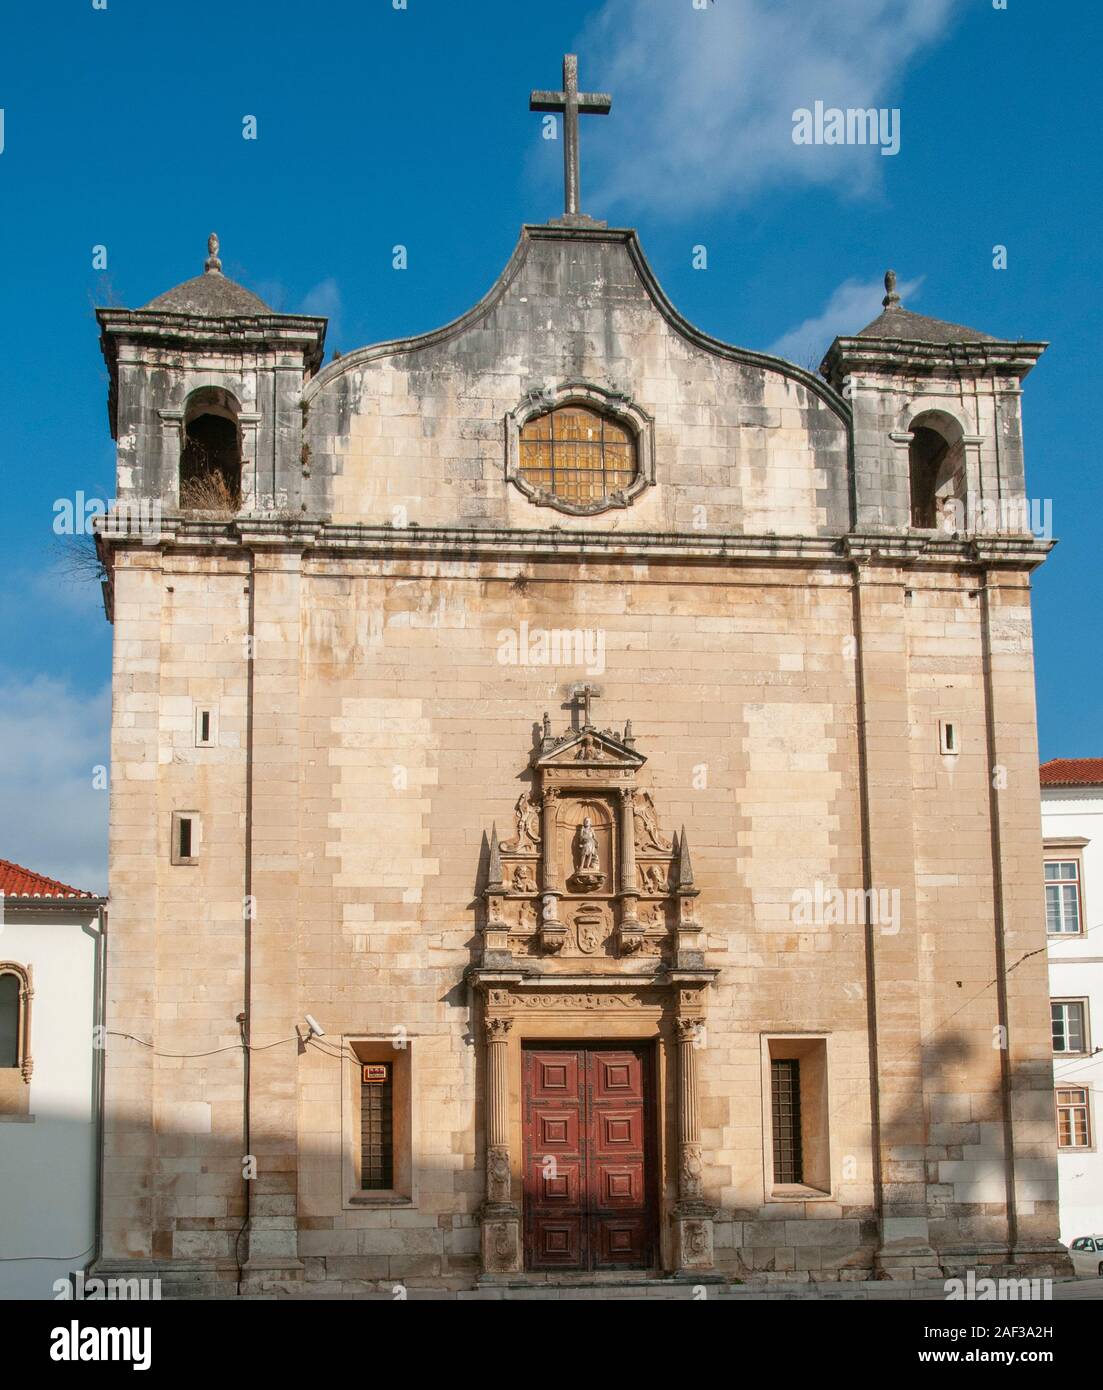 the church of Sao Joao de Almedina and the Museu nacional de Machado de Castro, Coimbra, Portugal, Stock Photo